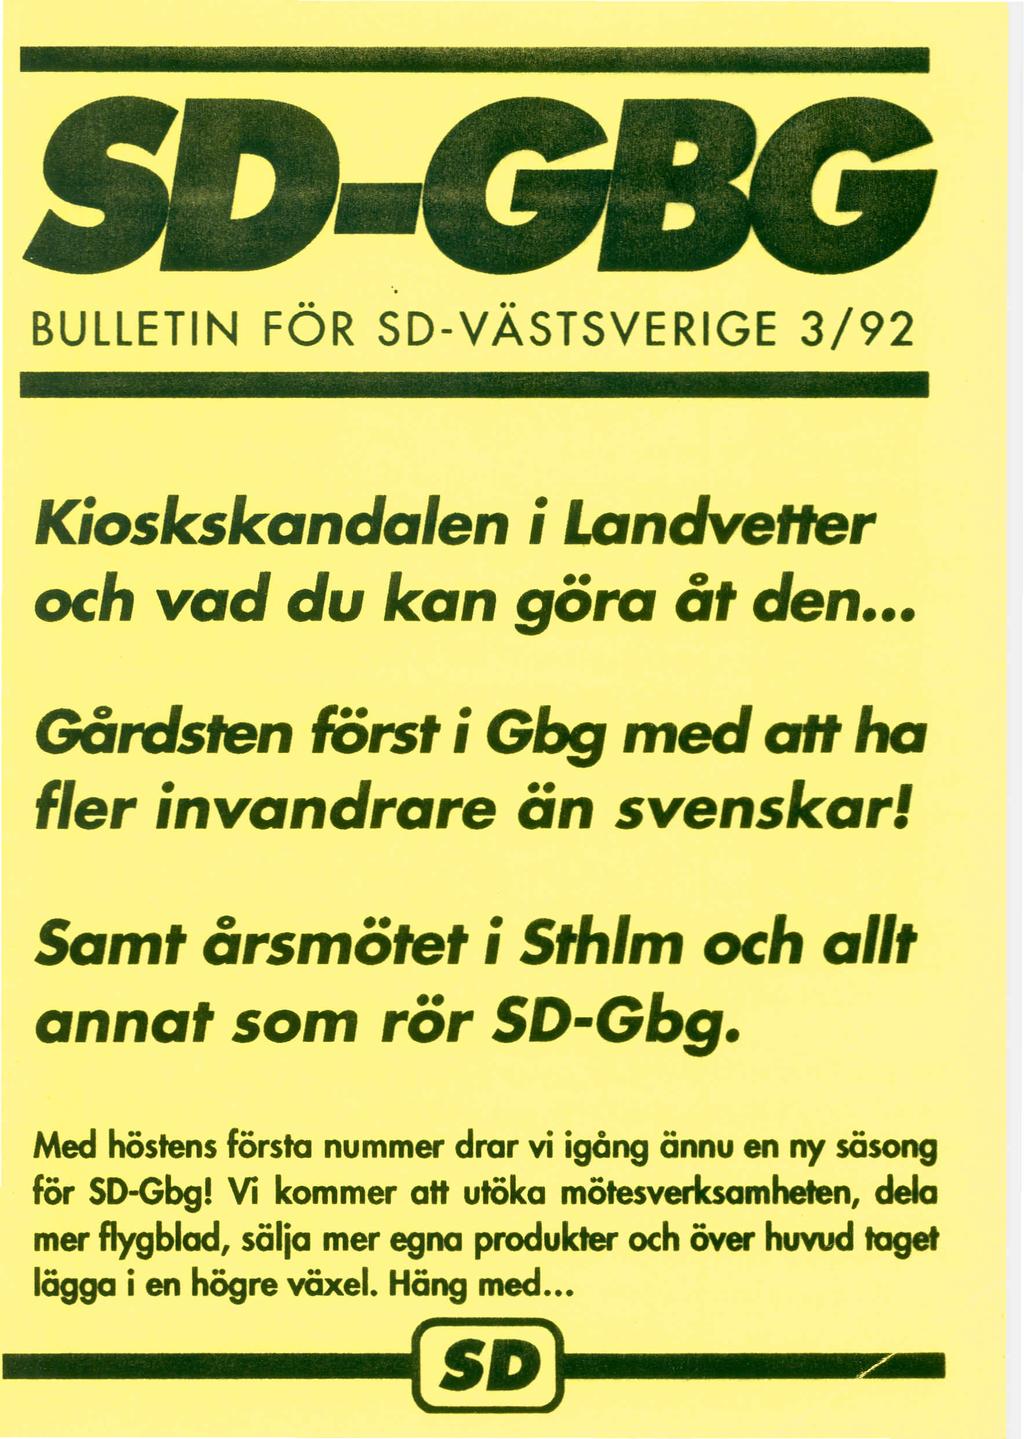 BULLETIN FOR SD-VASTSVERIGE 3/92 Kioskskanda/en ilandvetter och vad du kan gora at den GOrdsten forst; Gbg med aft ha f/er invandrare an svenskarl Samt arsmotet isthlm och allt annat som ror SD-Gbg.